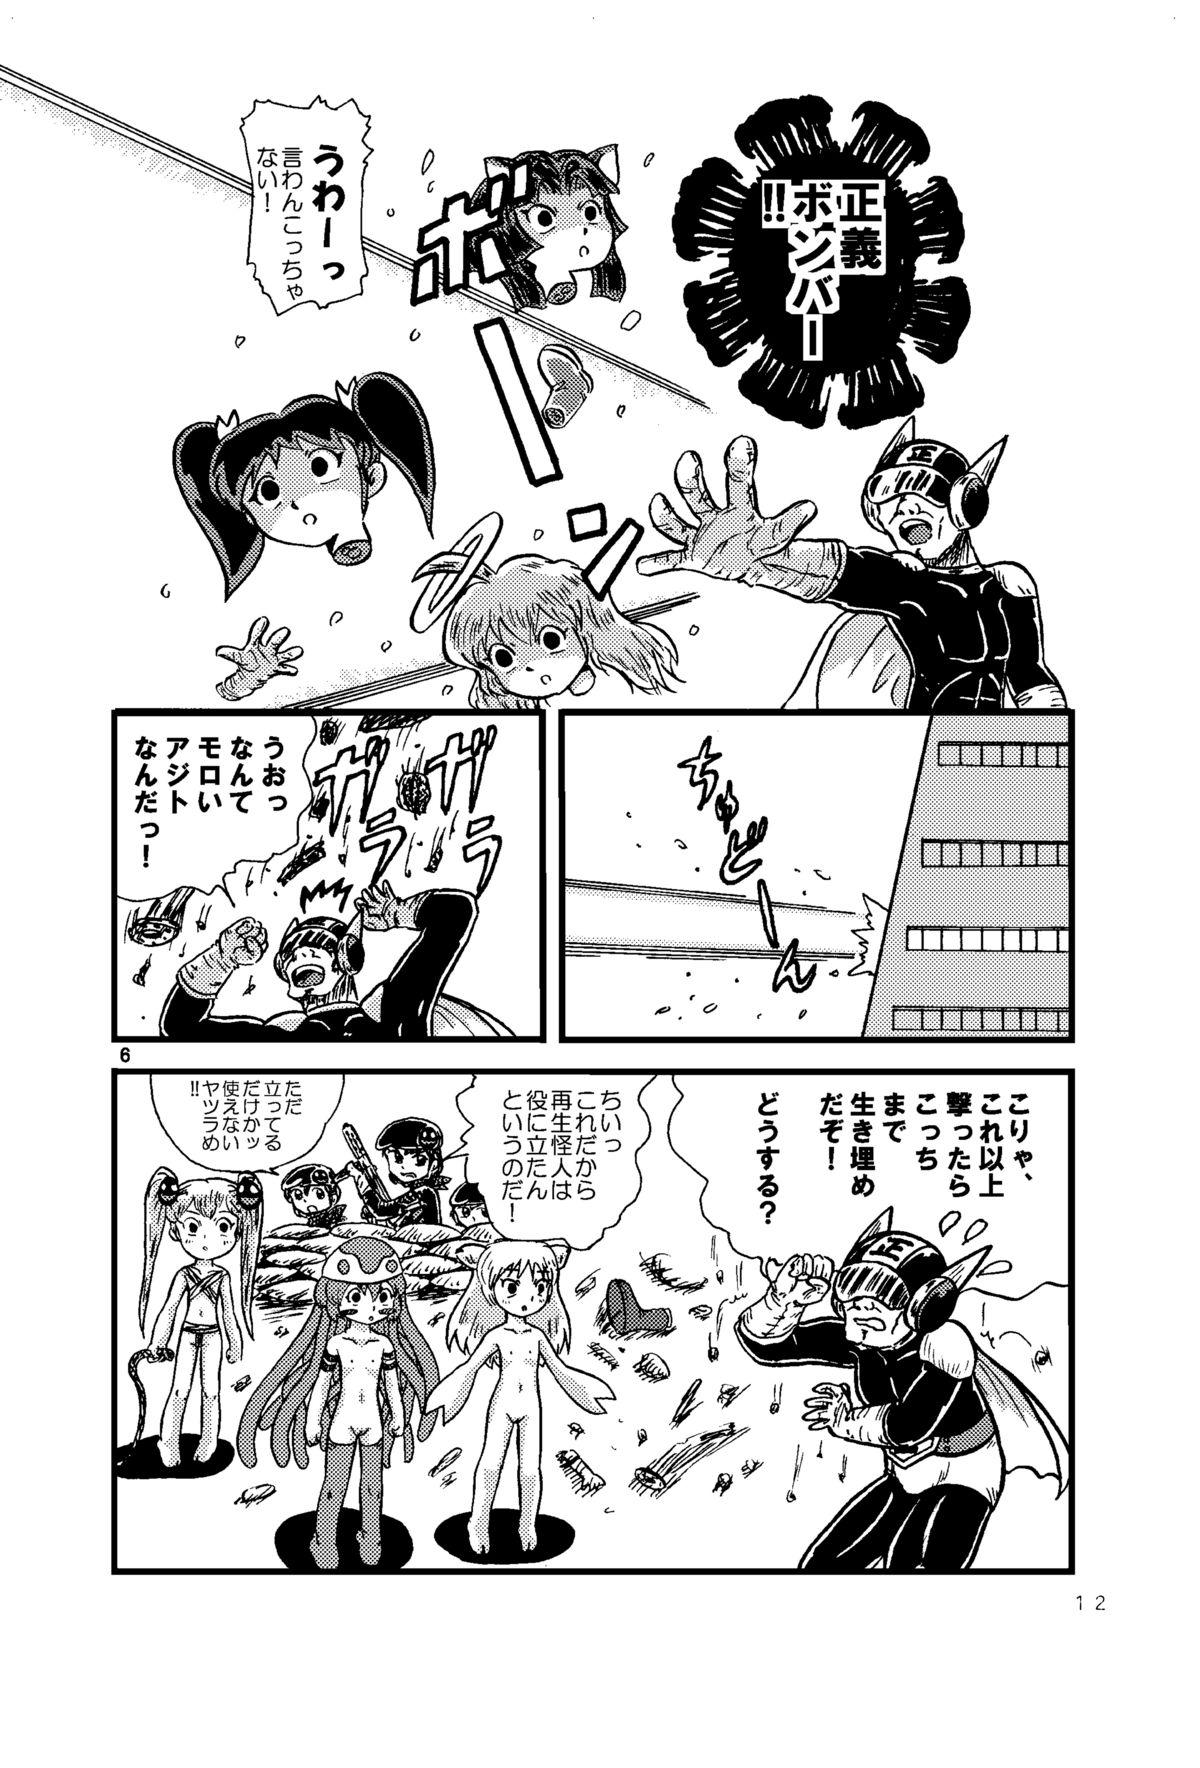 Bang Bros Tsurupeta Kenkyuu Houkokusho 005 "Dengeki Jigoku" - Turupeta Research Report Gay Handjob - Page 11